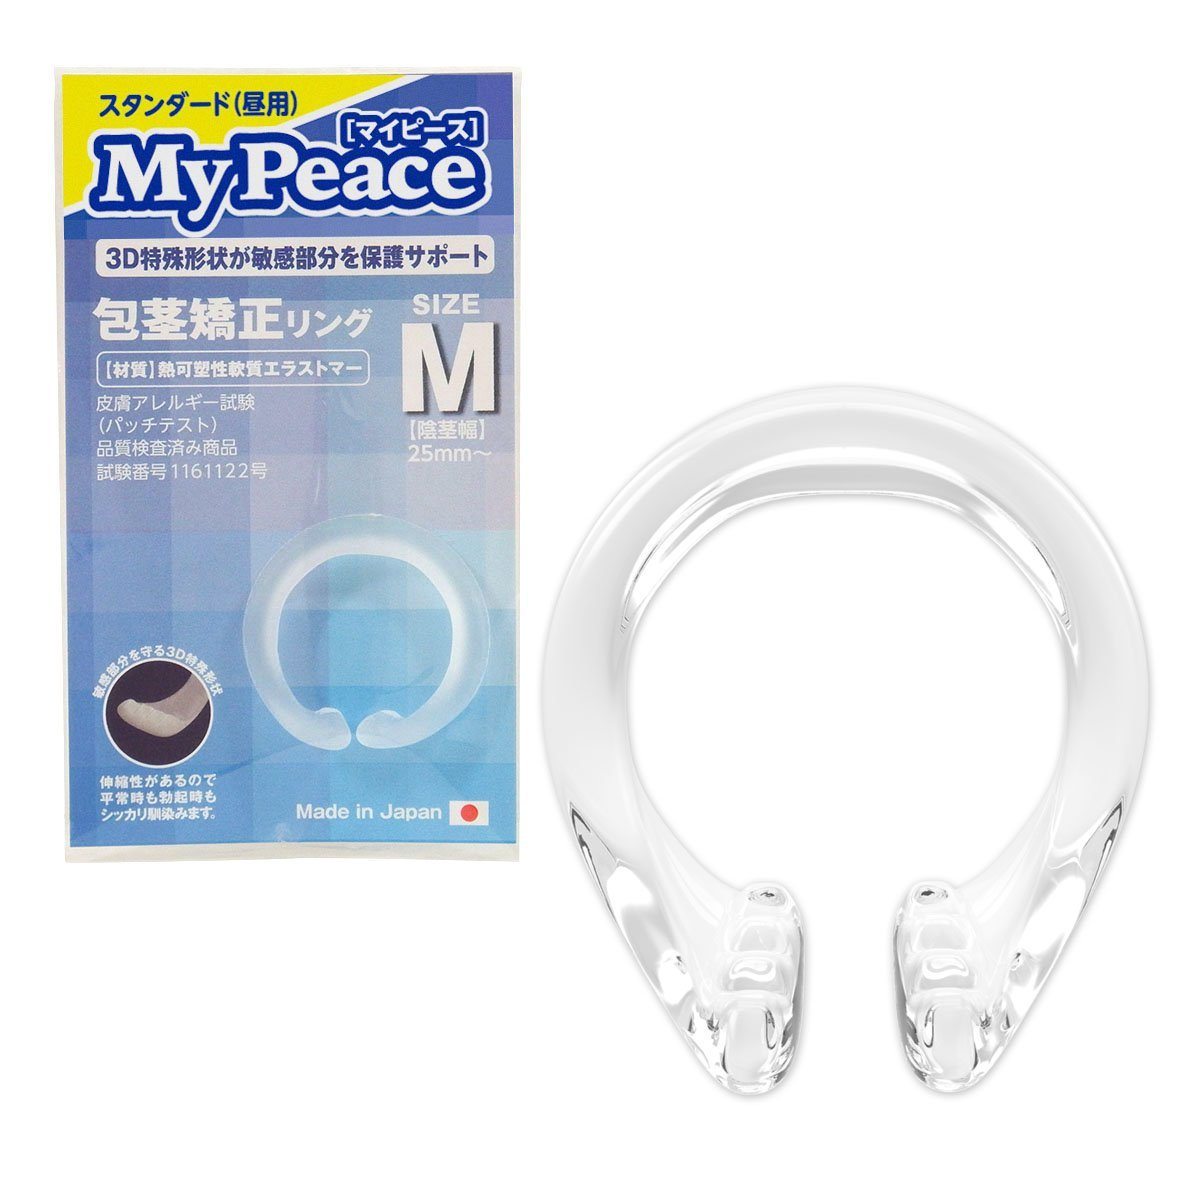 SSI JAPAN My Peace 日用標準版包莖矯正環 包莖矯正環 M 購買